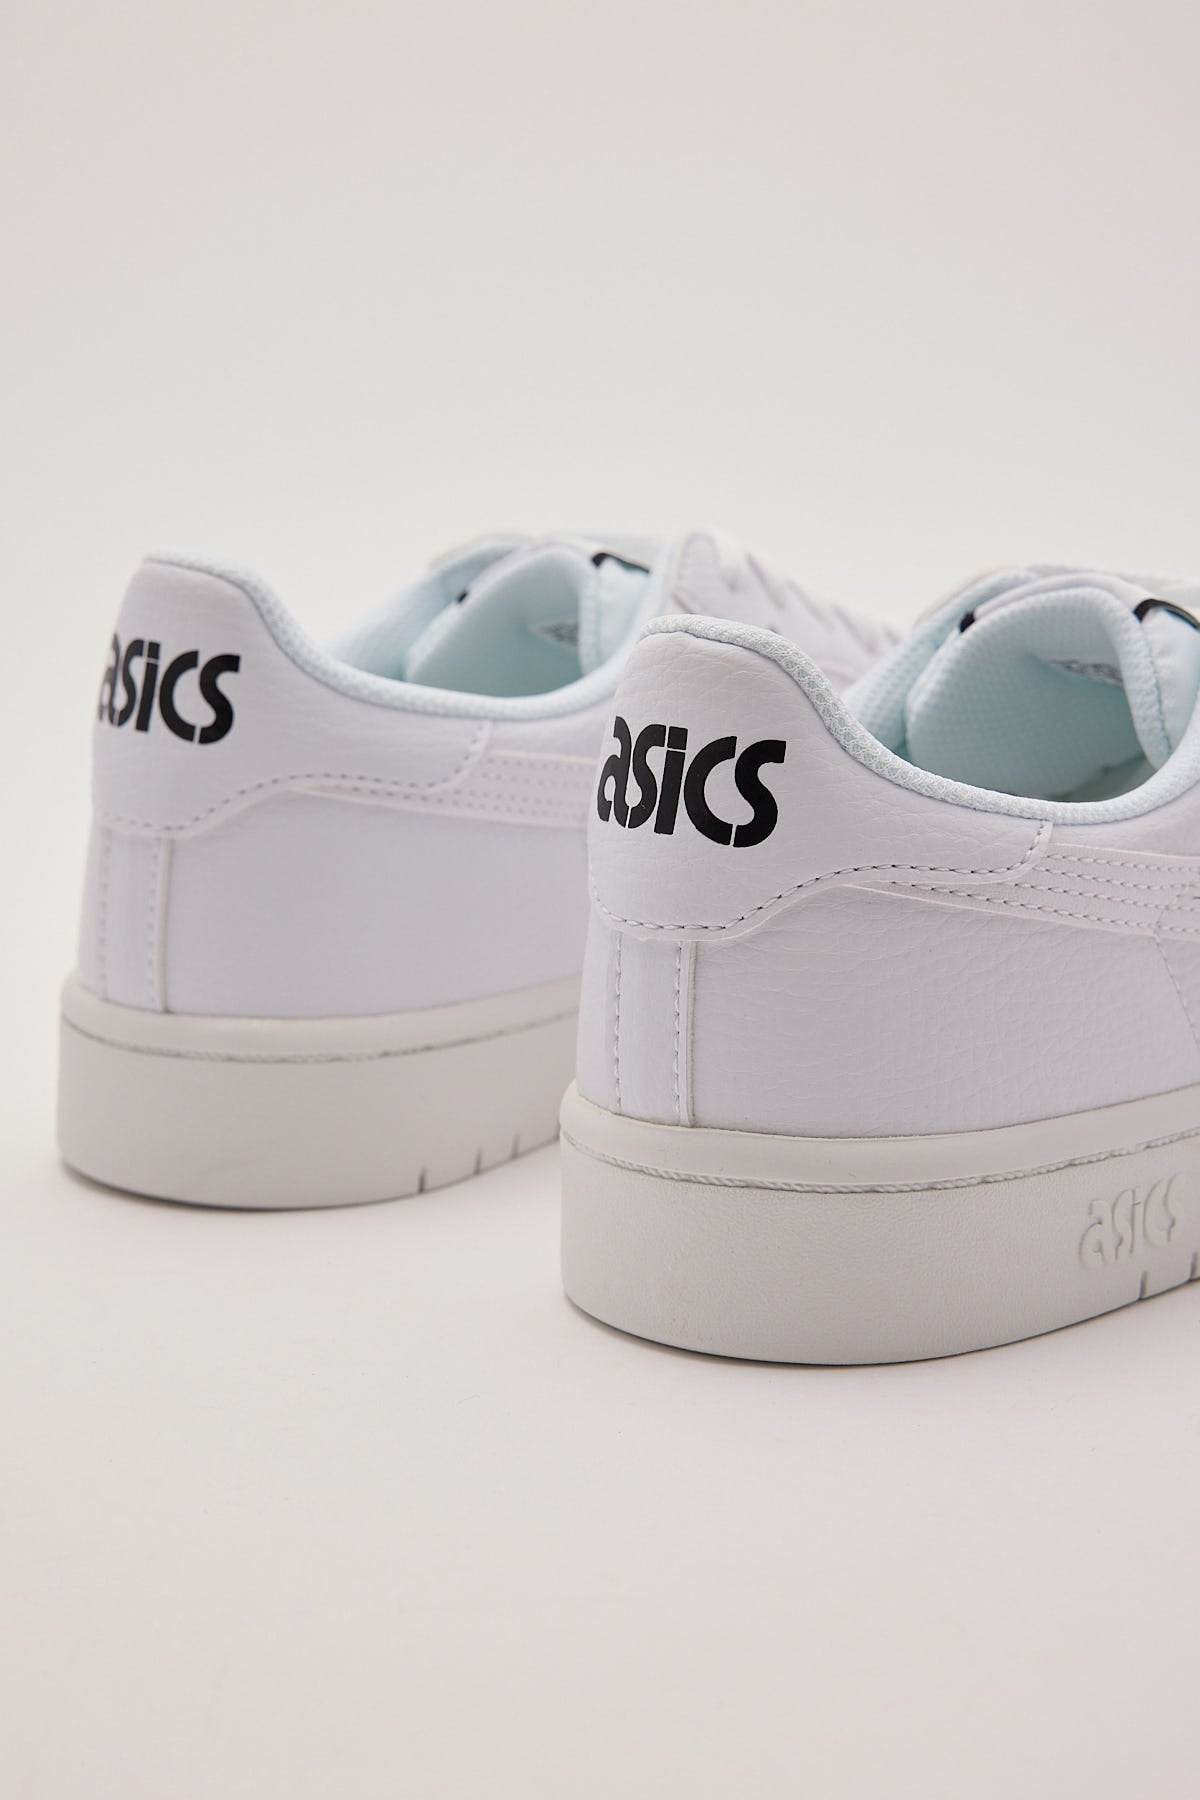 Asics Womens Japan S Sneaker White White